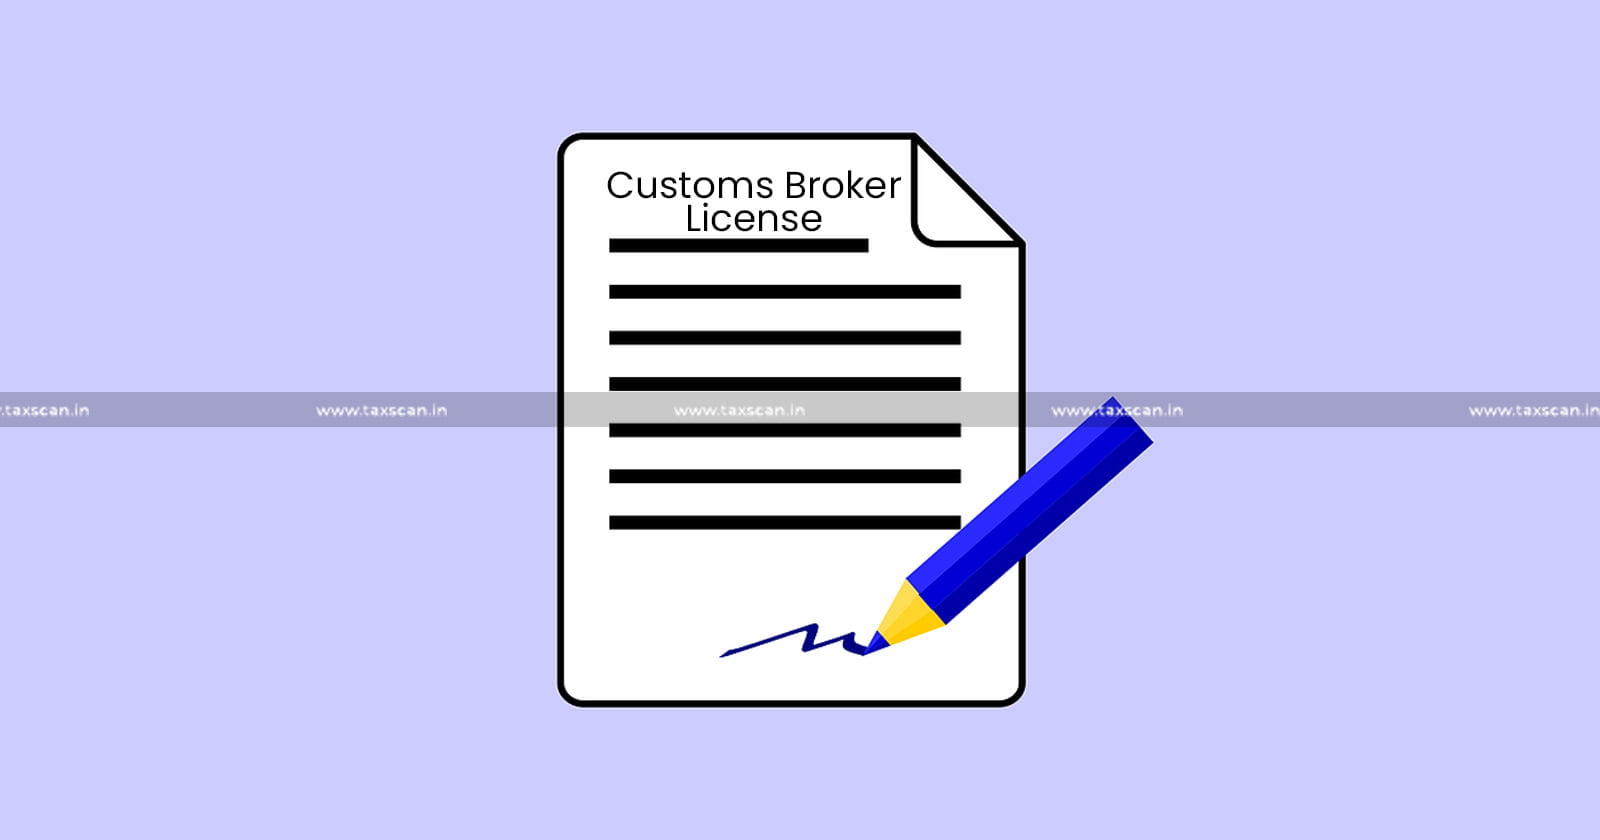 Violation of Regulation of CBLR proven - CESTAT upholds Revocation of Customs Broker License - CBLR - Revocation of Customs Broker License - Customs Broker License - CESTAT - taxscan